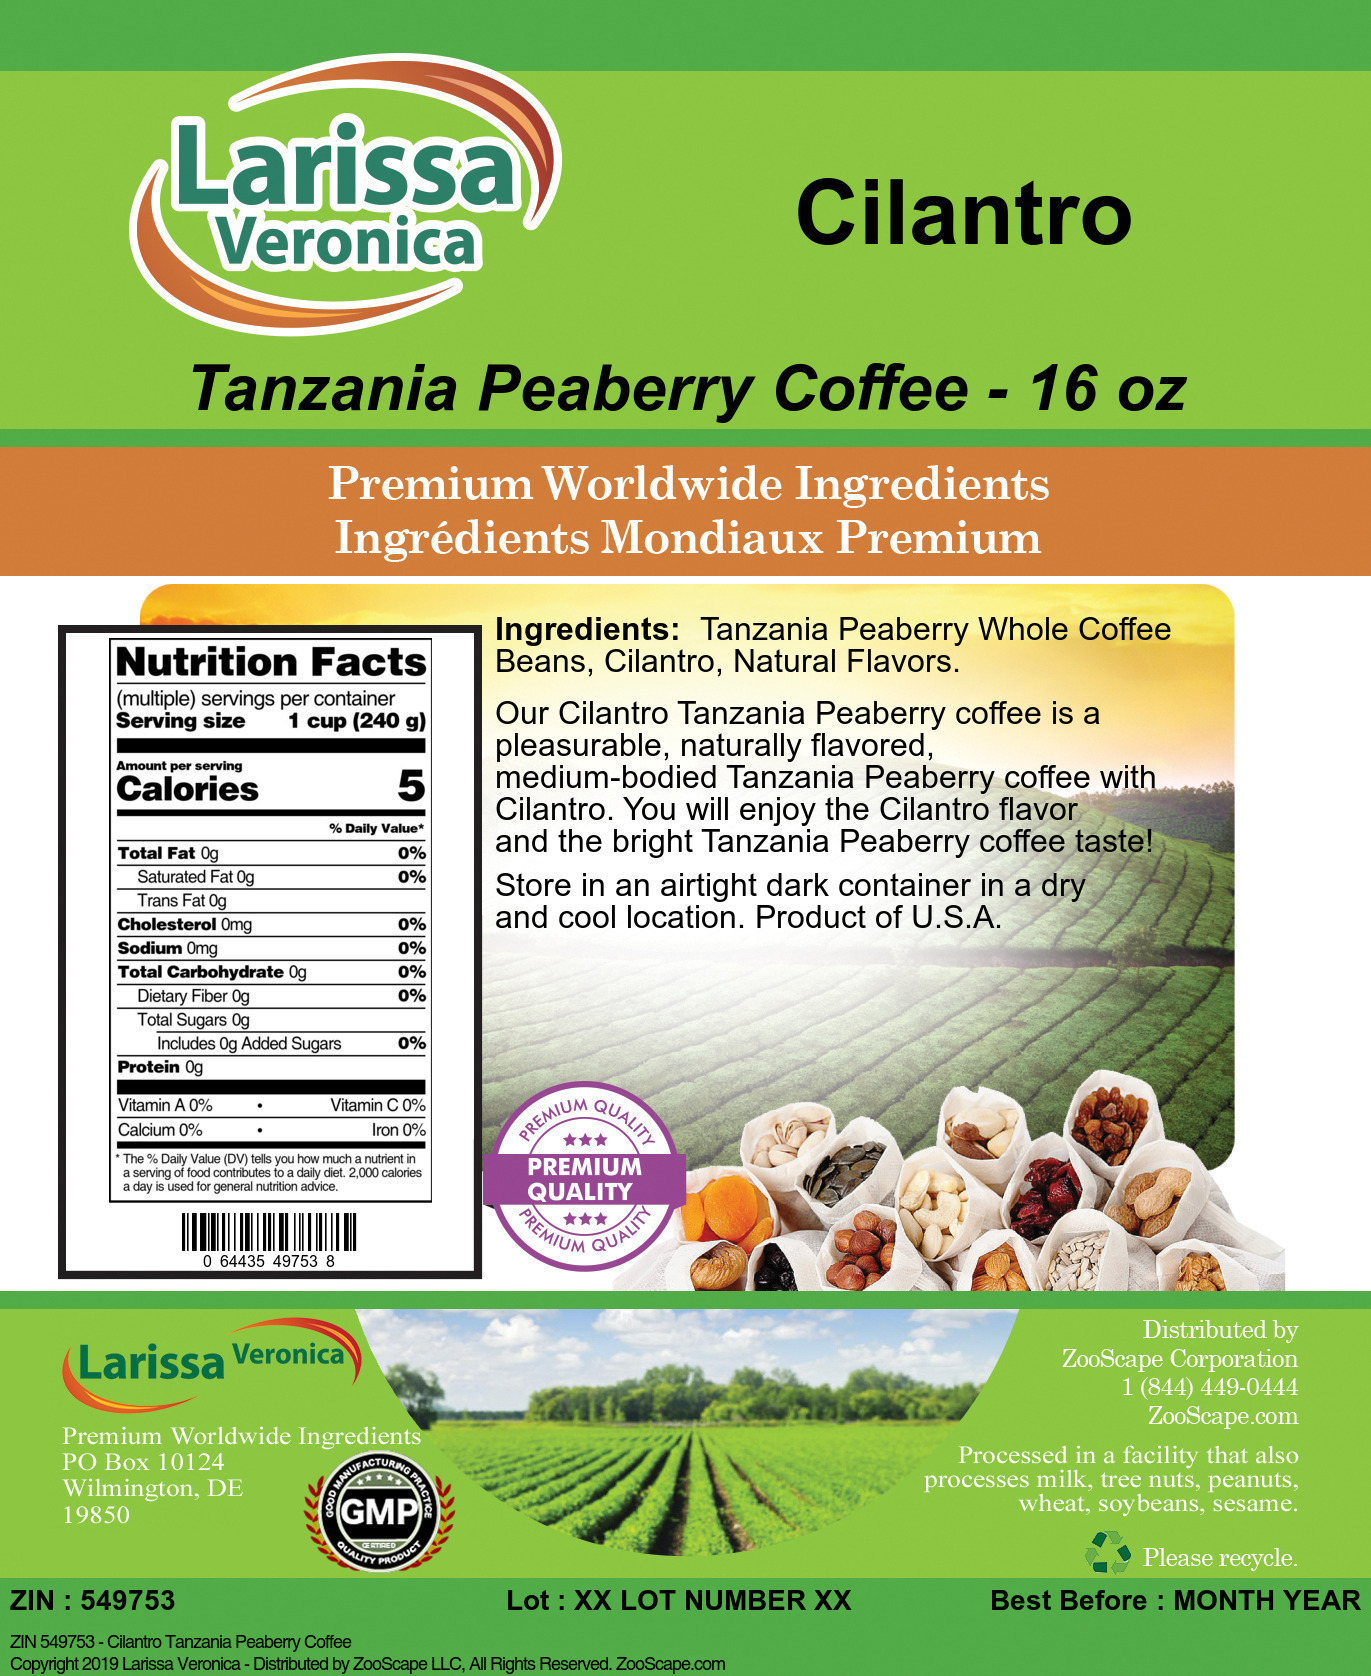 Cilantro Tanzania Peaberry Coffee - Label